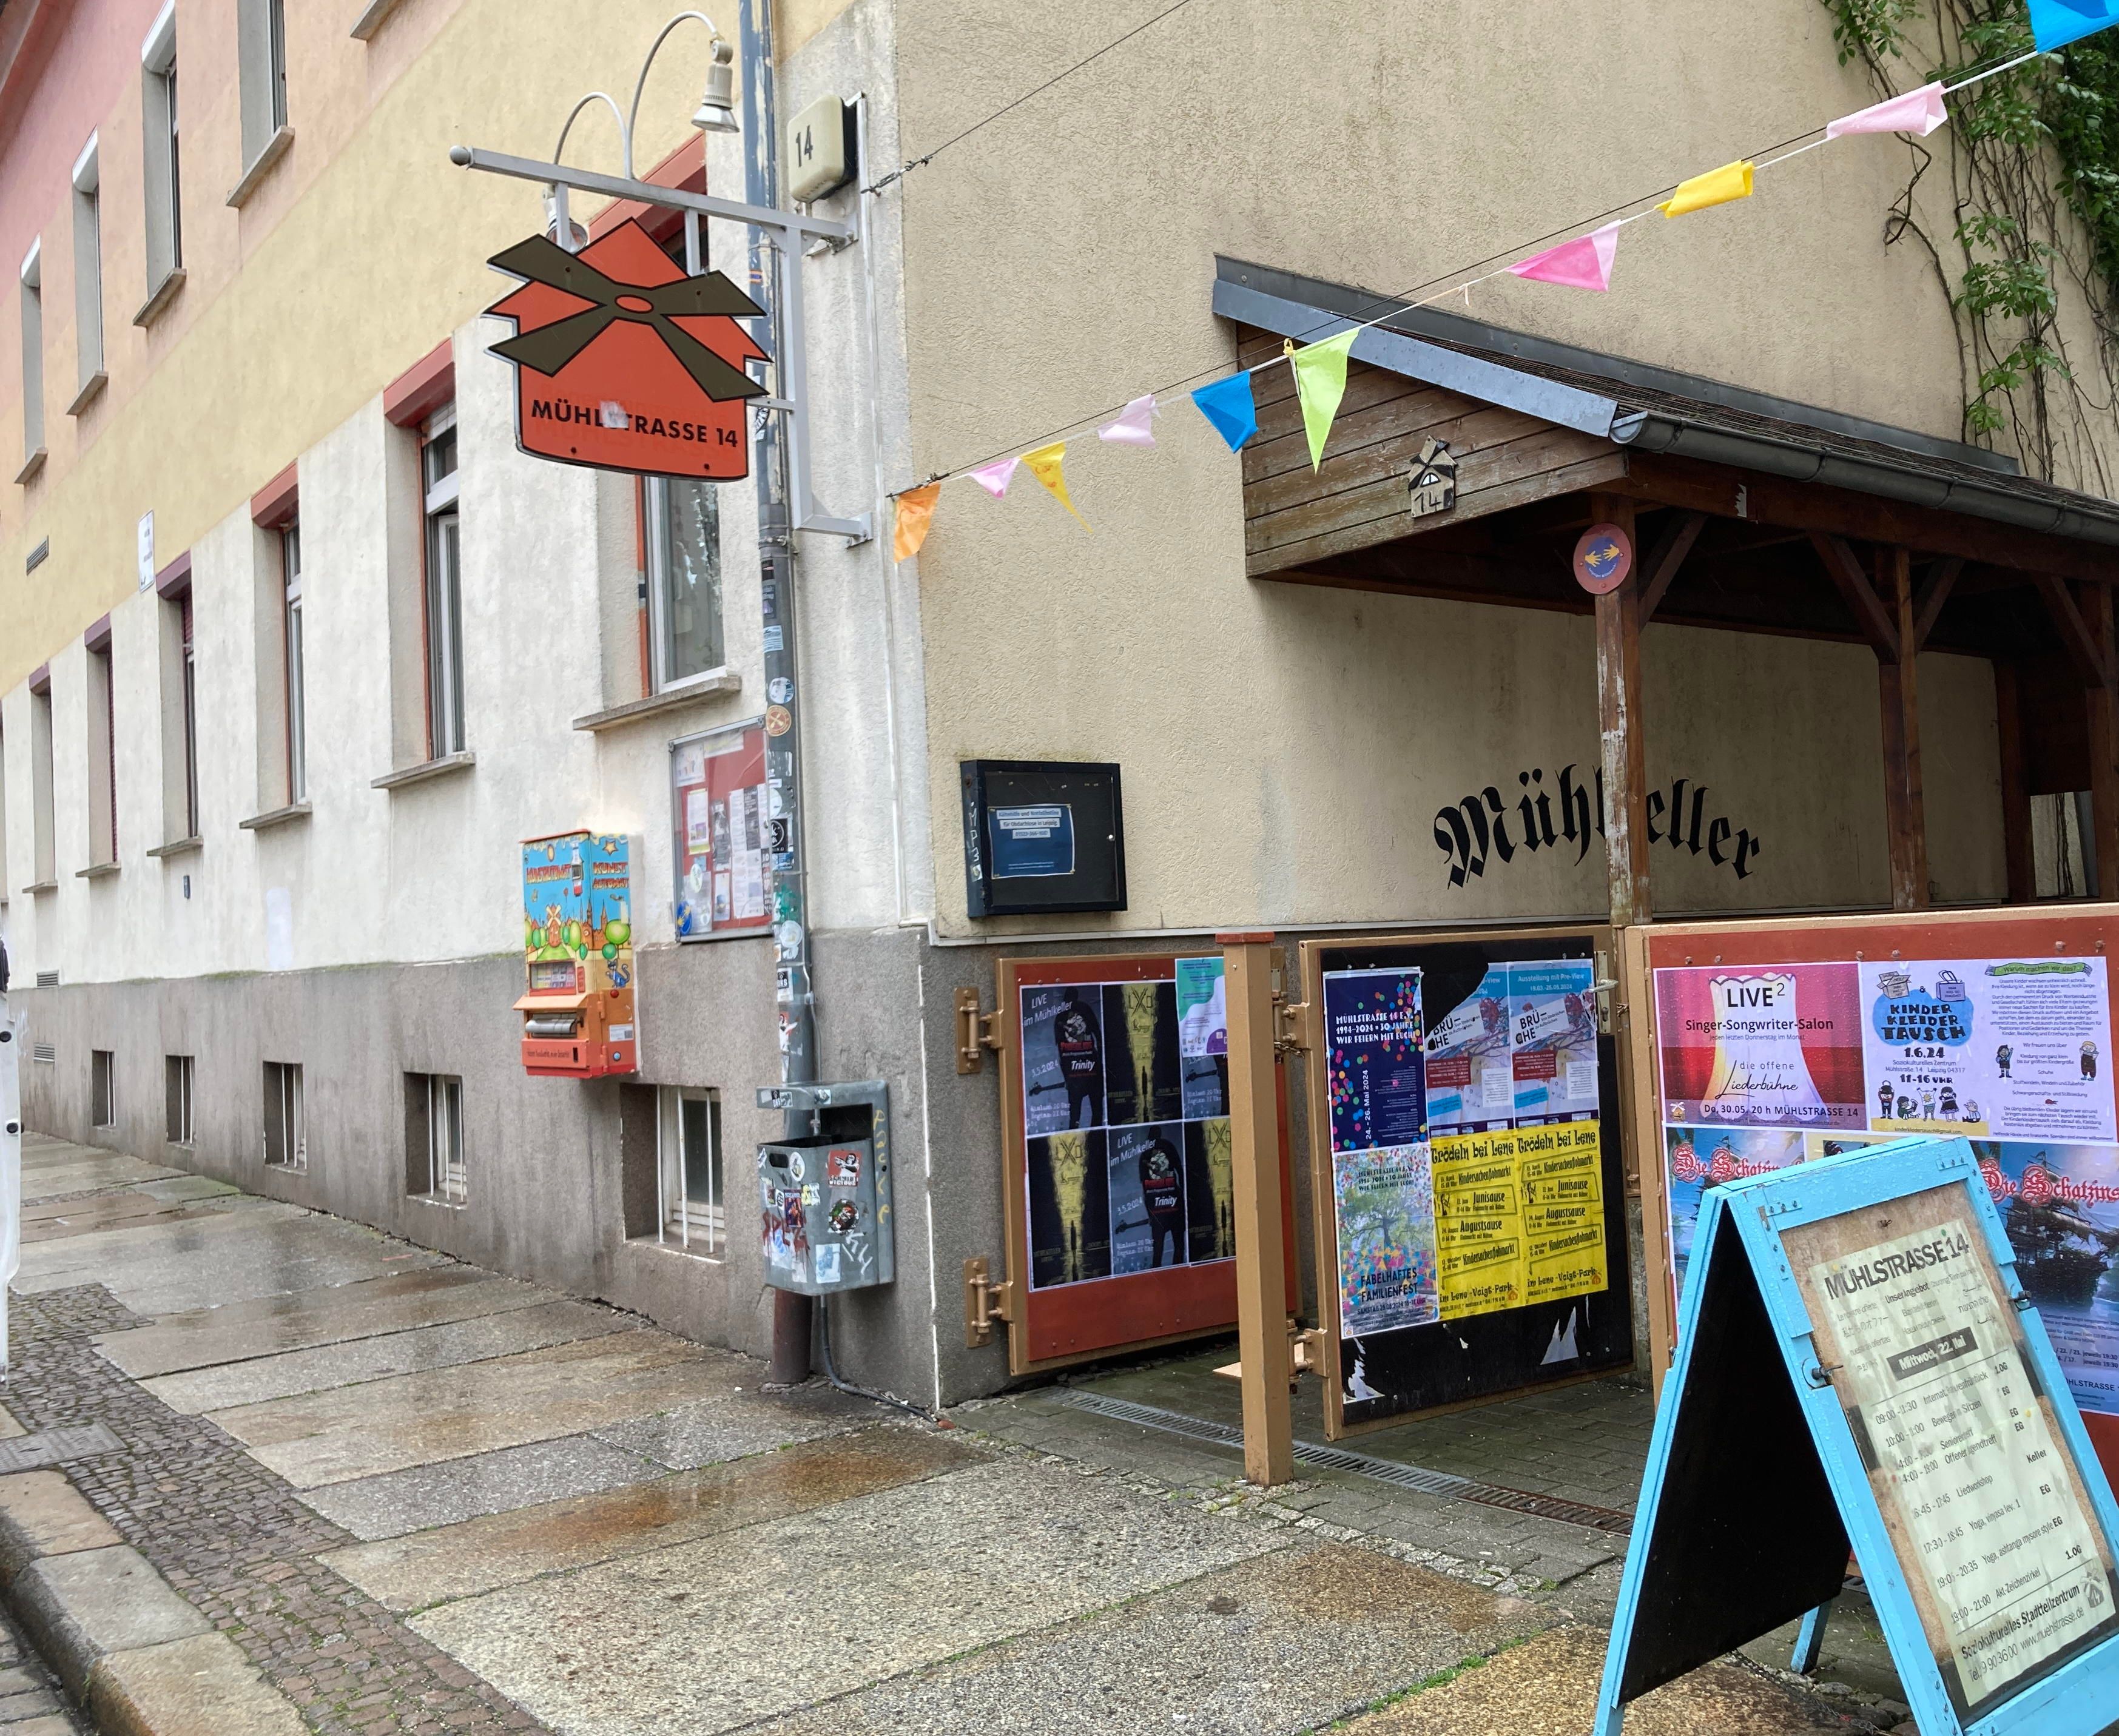   Mühlstraße 14: Seit 30 Jahren Raum für Begegnungen | Das Soziokulturelle Zentrum feiert Jubiläum  